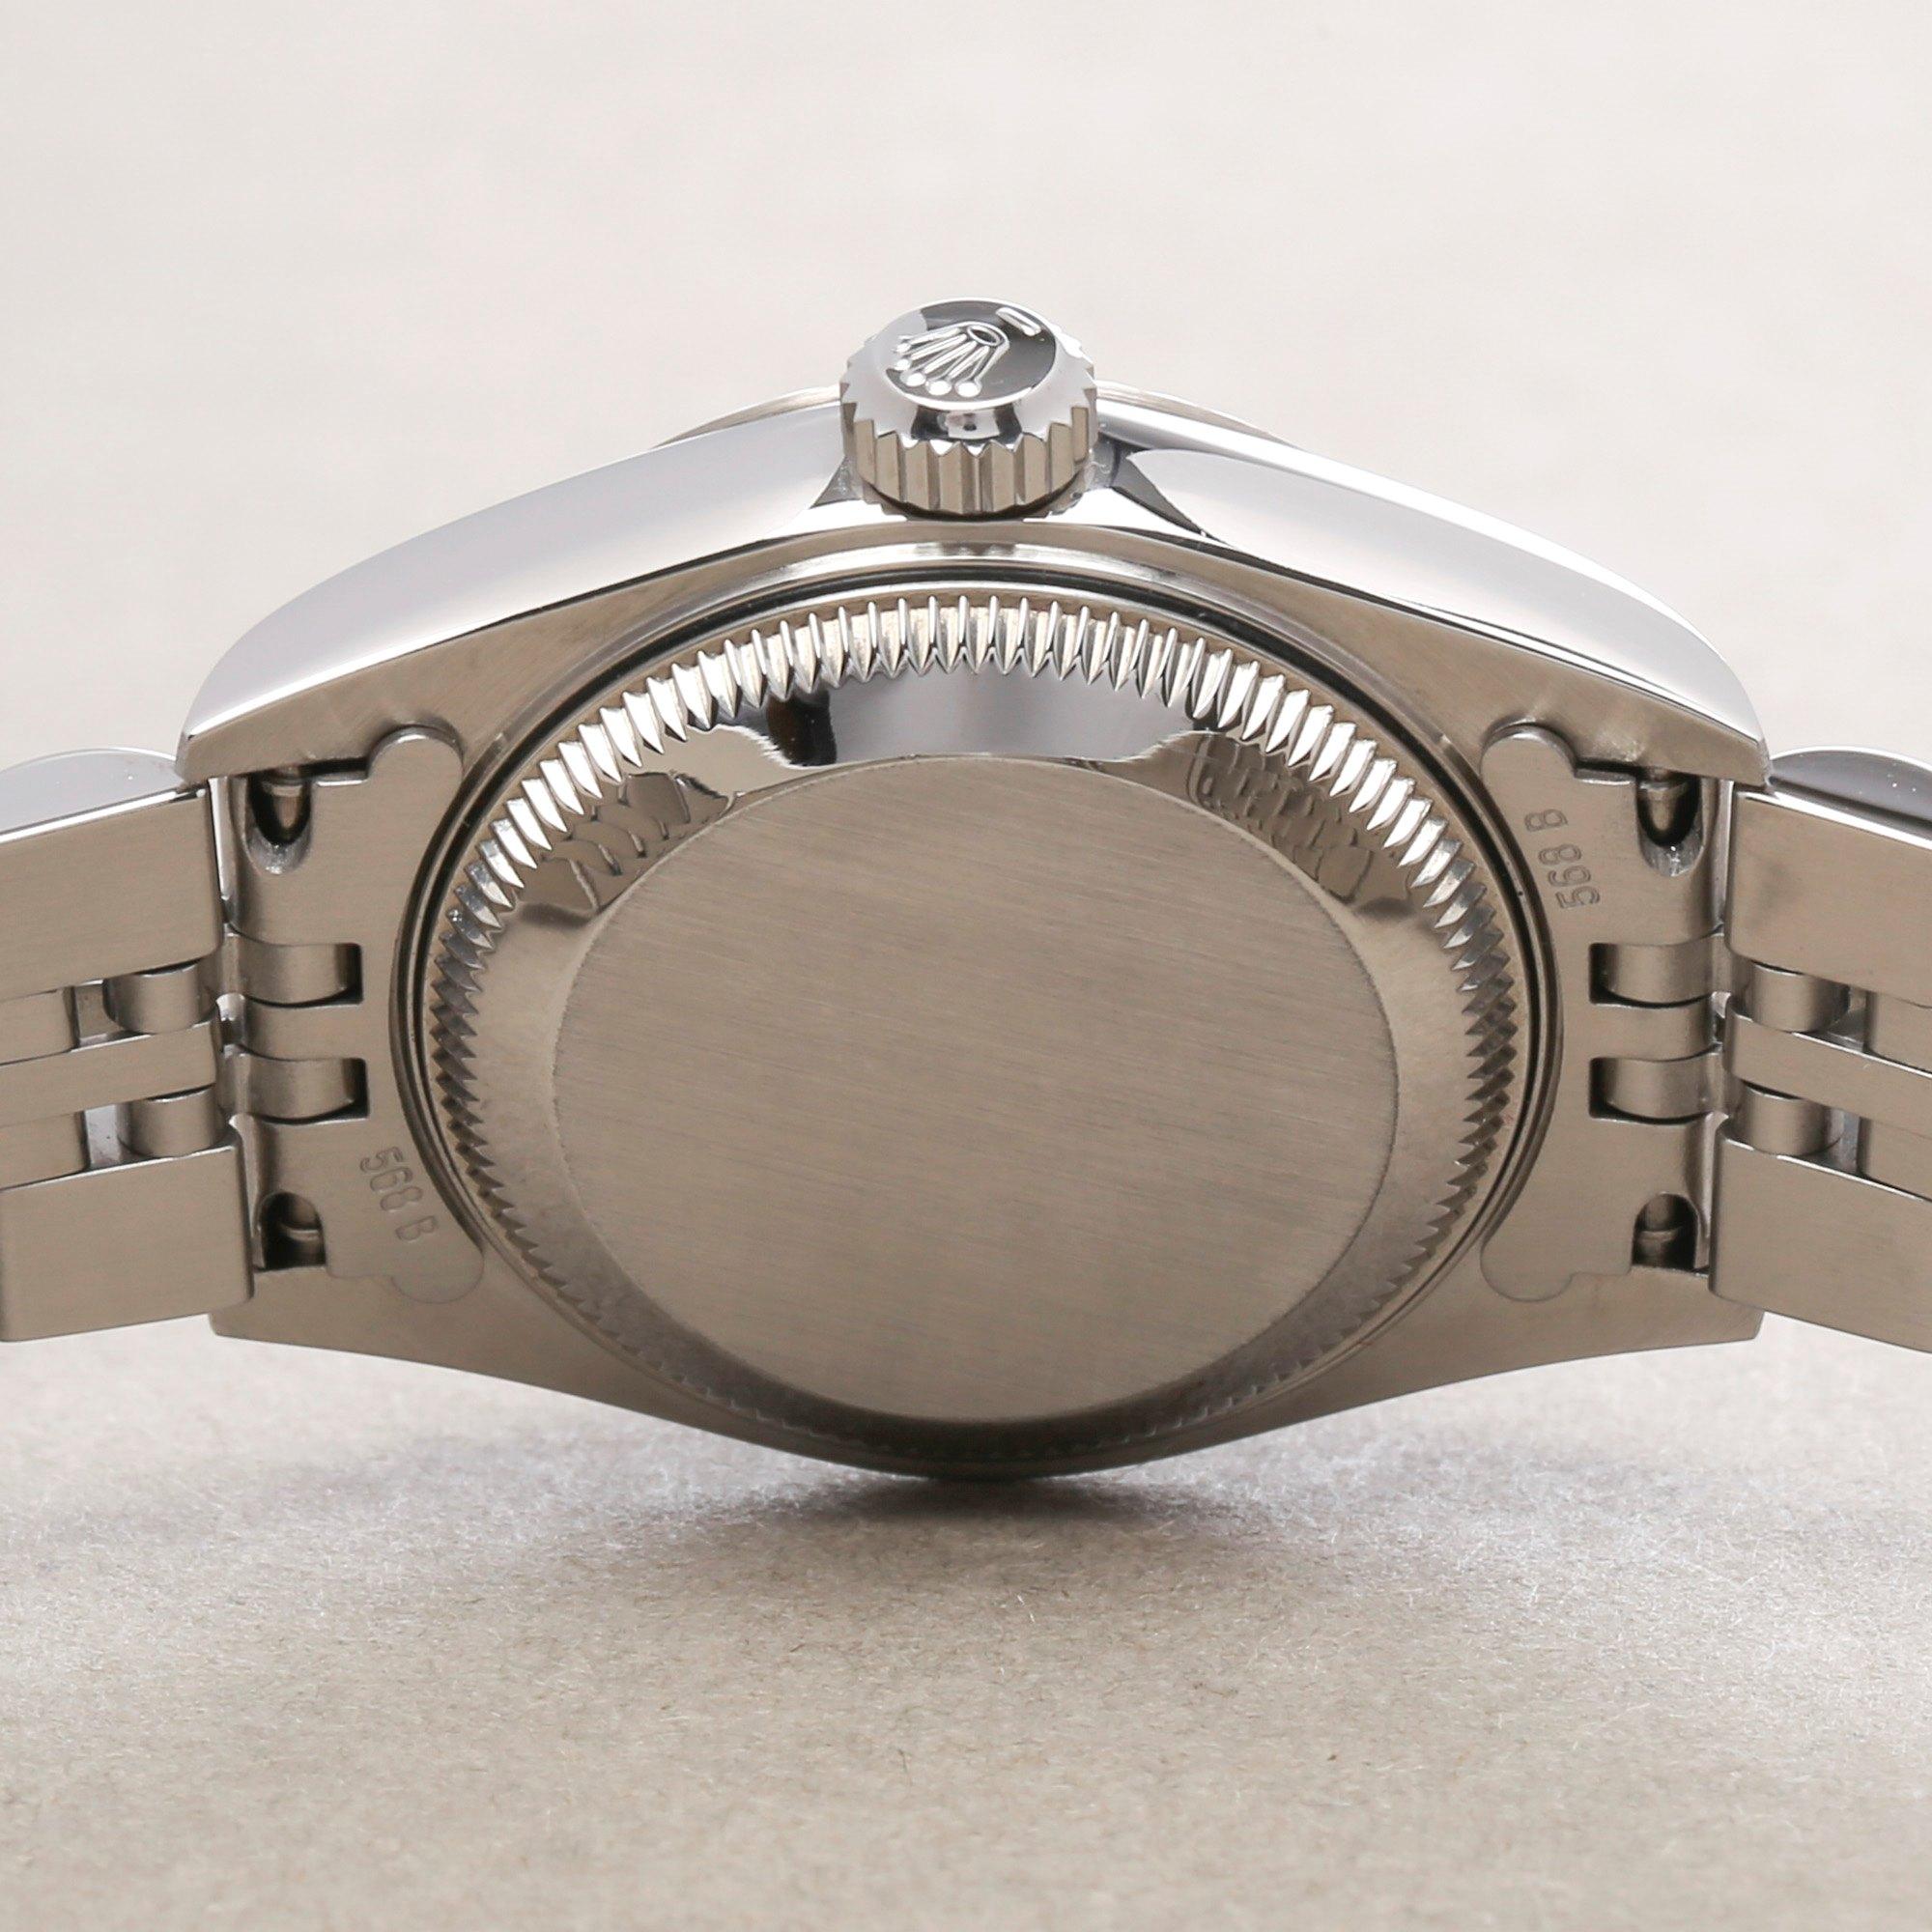 Rolex Datejust 26 79174 Ladies White Gold & Stainless Steel Watch 4